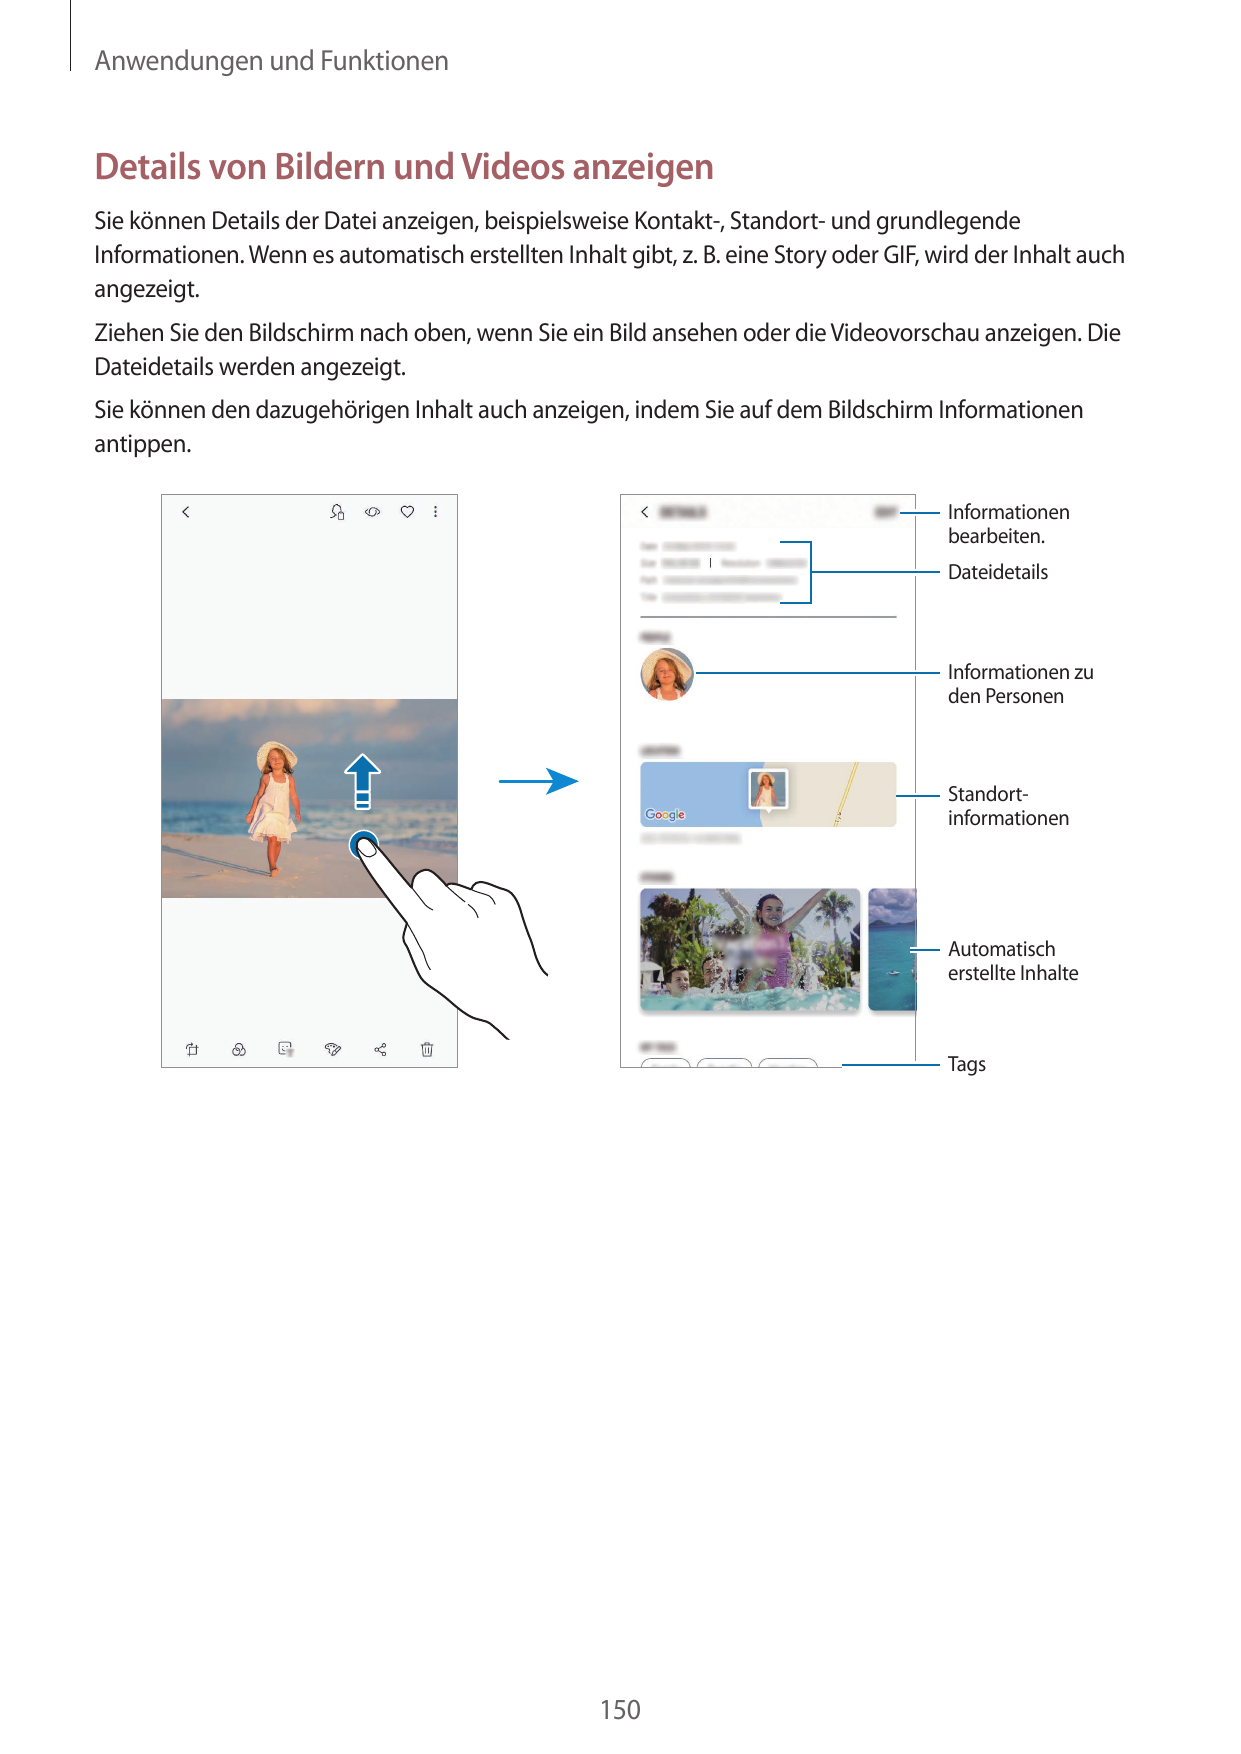 Anwendungen und FunktionenDetails von Bildern und Videos anzeigenSie können Details der Datei anzeigen, beispielsweise Kontakt-,